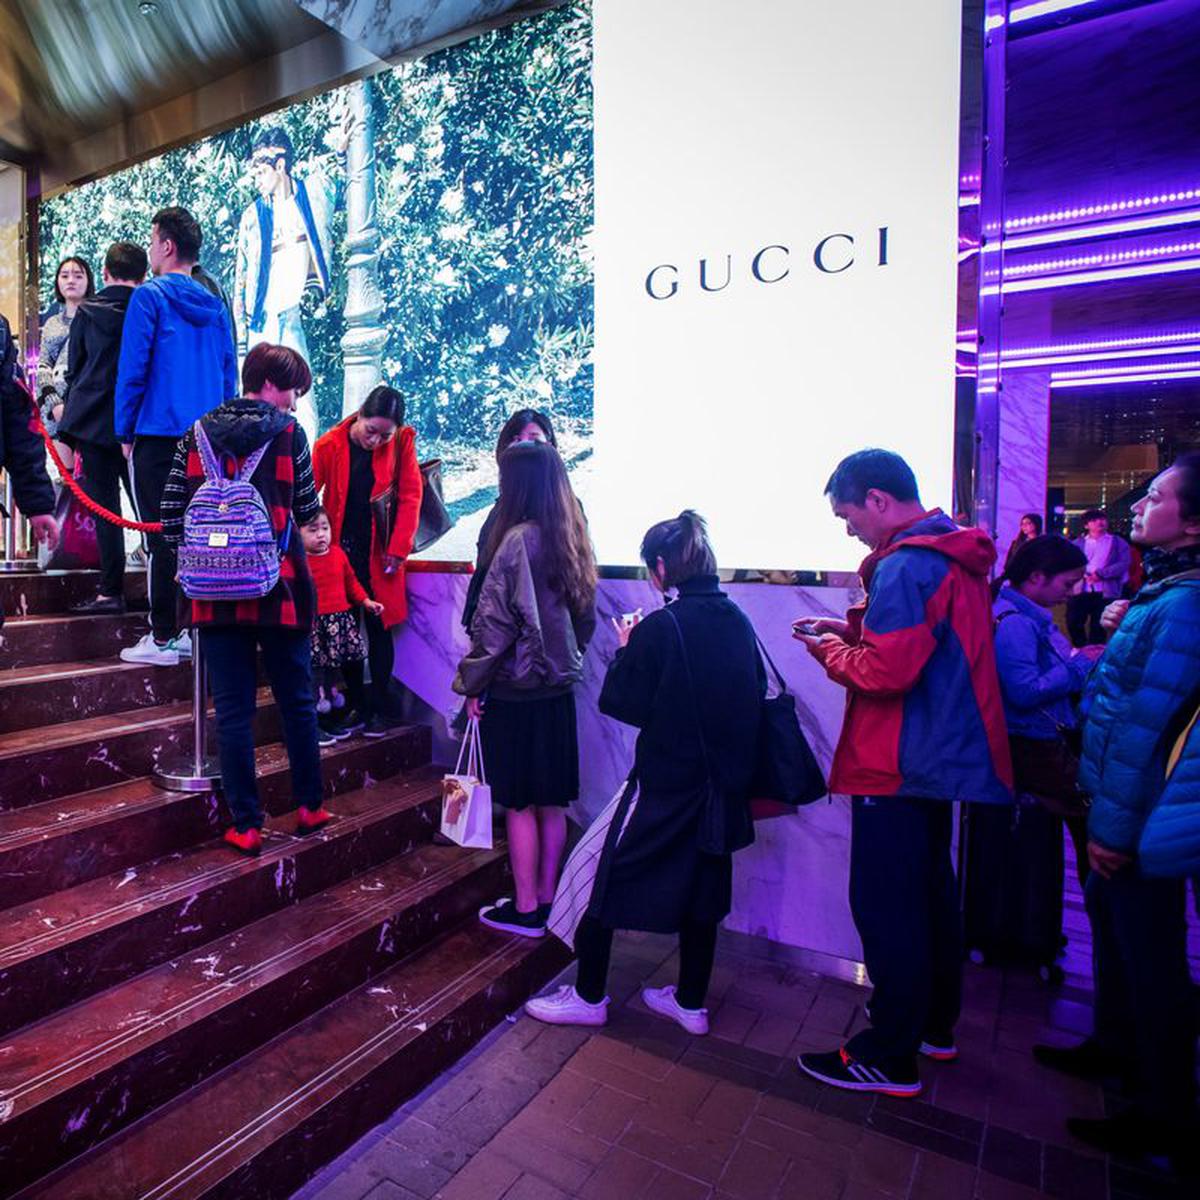 Gucci triunfa en China gracias a clanes de jóvenes derrochadores | ECONOMIA  | GESTIÓN